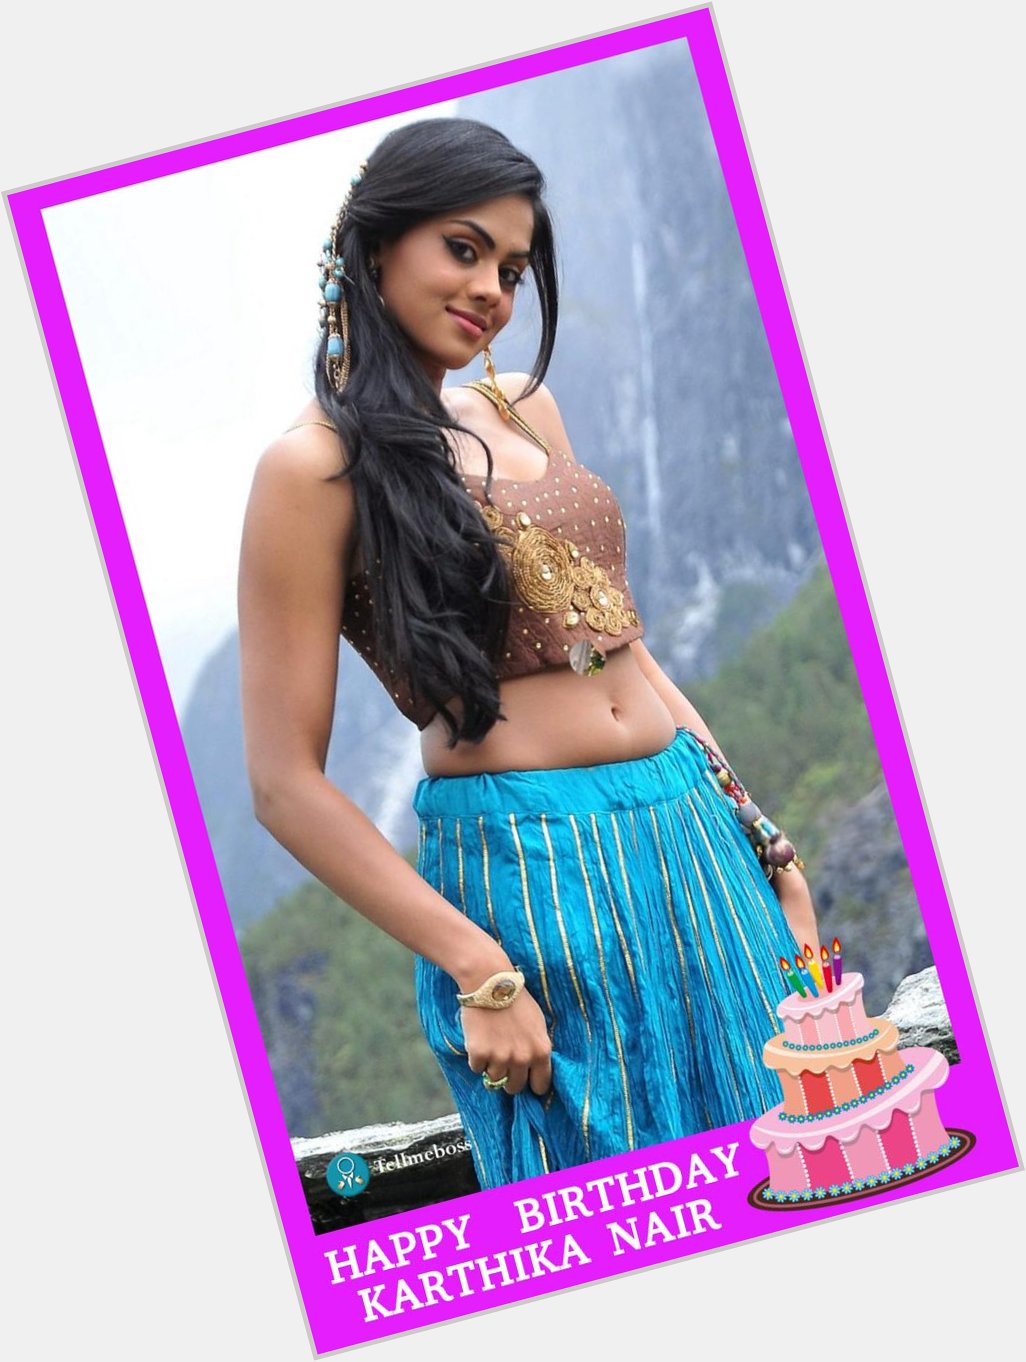 Happy Birthday To Karthika Nair!!!
 